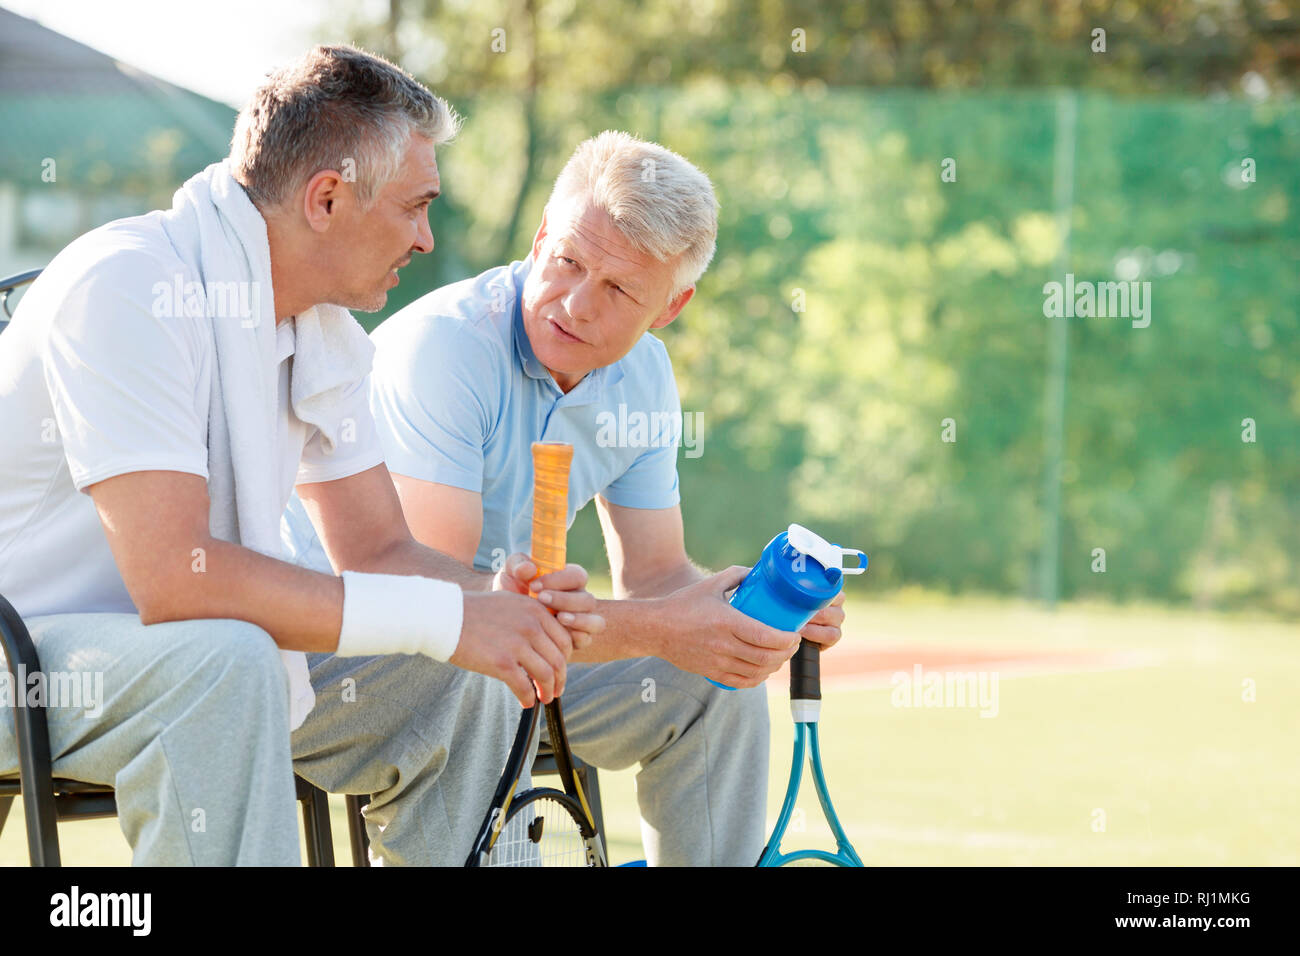 Mâle mature amis parler alors qu'il était assis avec les raquettes de tennis et une bouteille d'eau sur une chaise en cour Banque D'Images